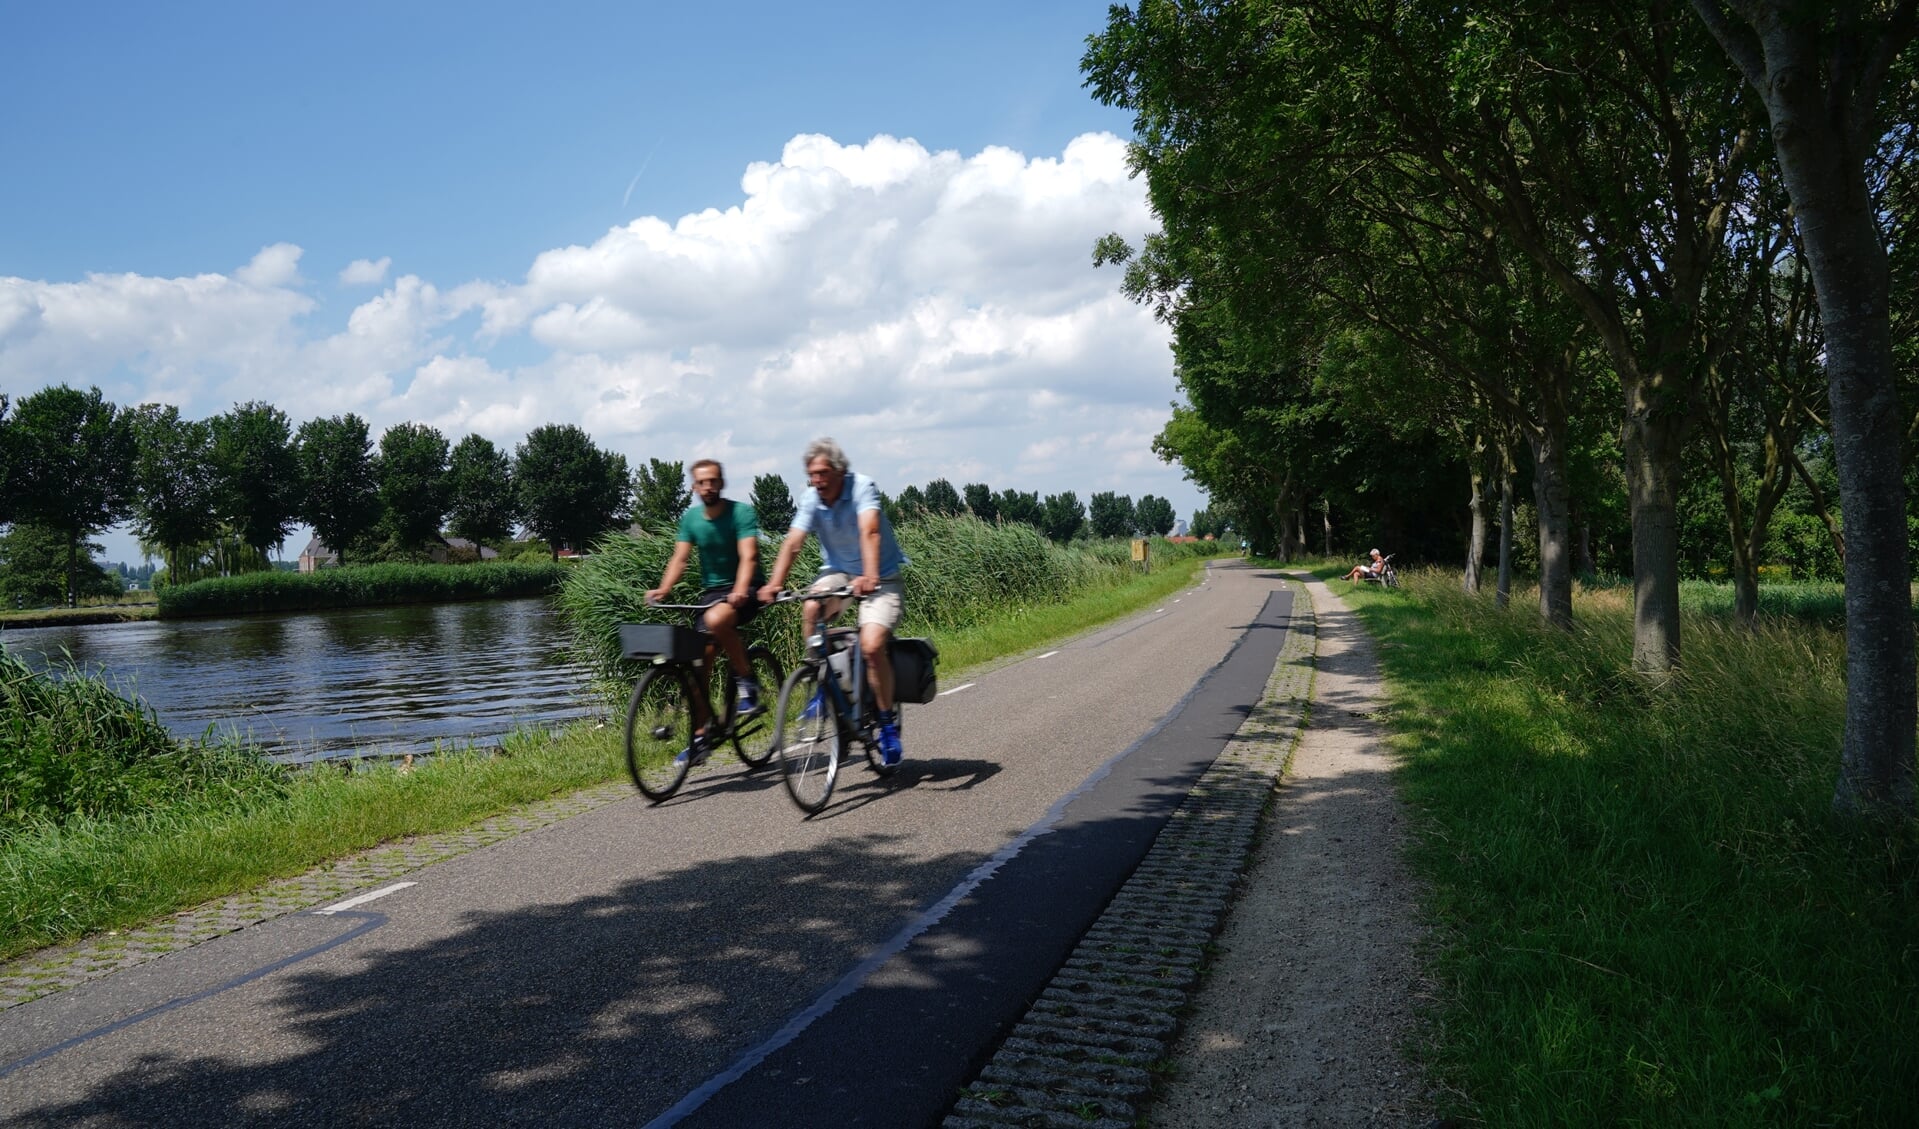 Het gebied langs de Amstel is en van de weinige recreatiegebieden in de regio met een relatief lager bezoekintensiteit. Hier liggen nog kansen op recreatie te stimuleren.